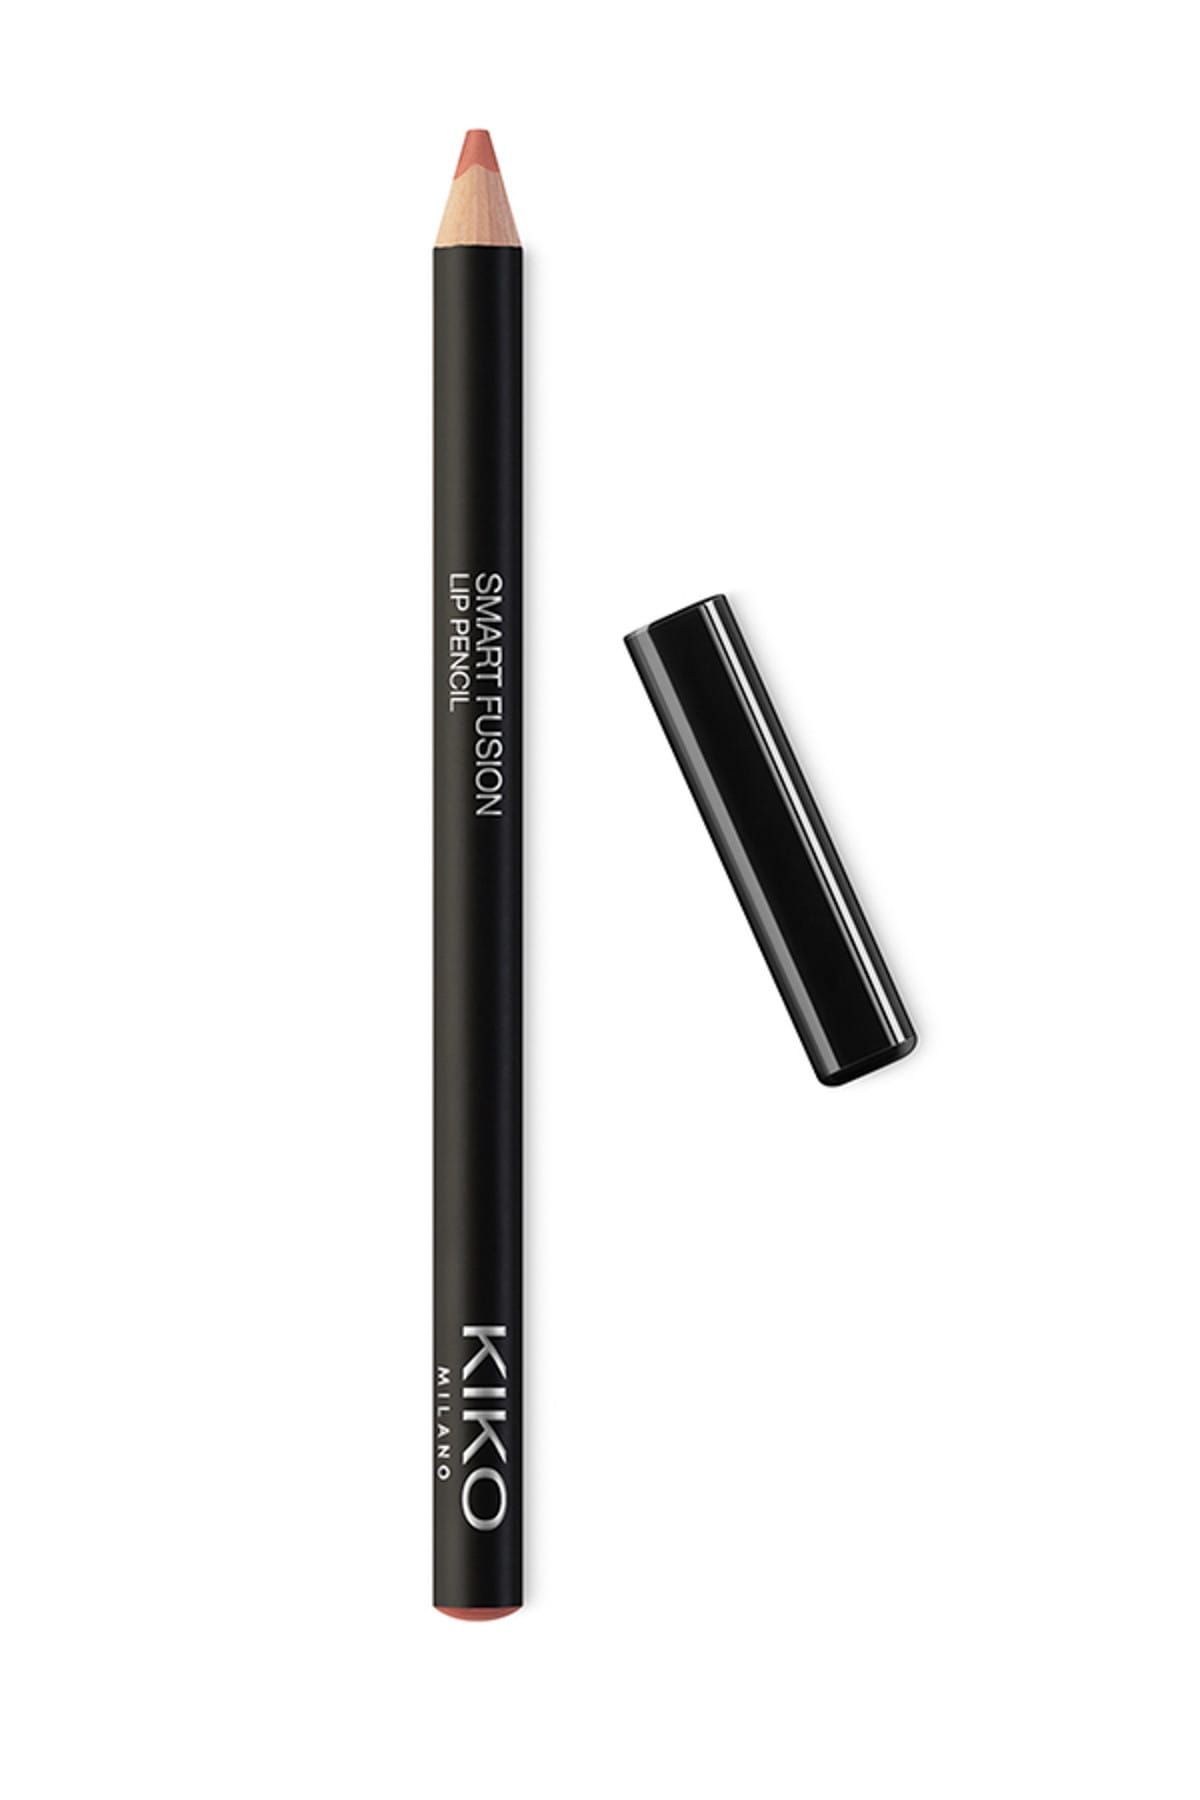 KIKO مداد لب مداد لب هوشمند ترکیبی 504 بیسکویت رزیان